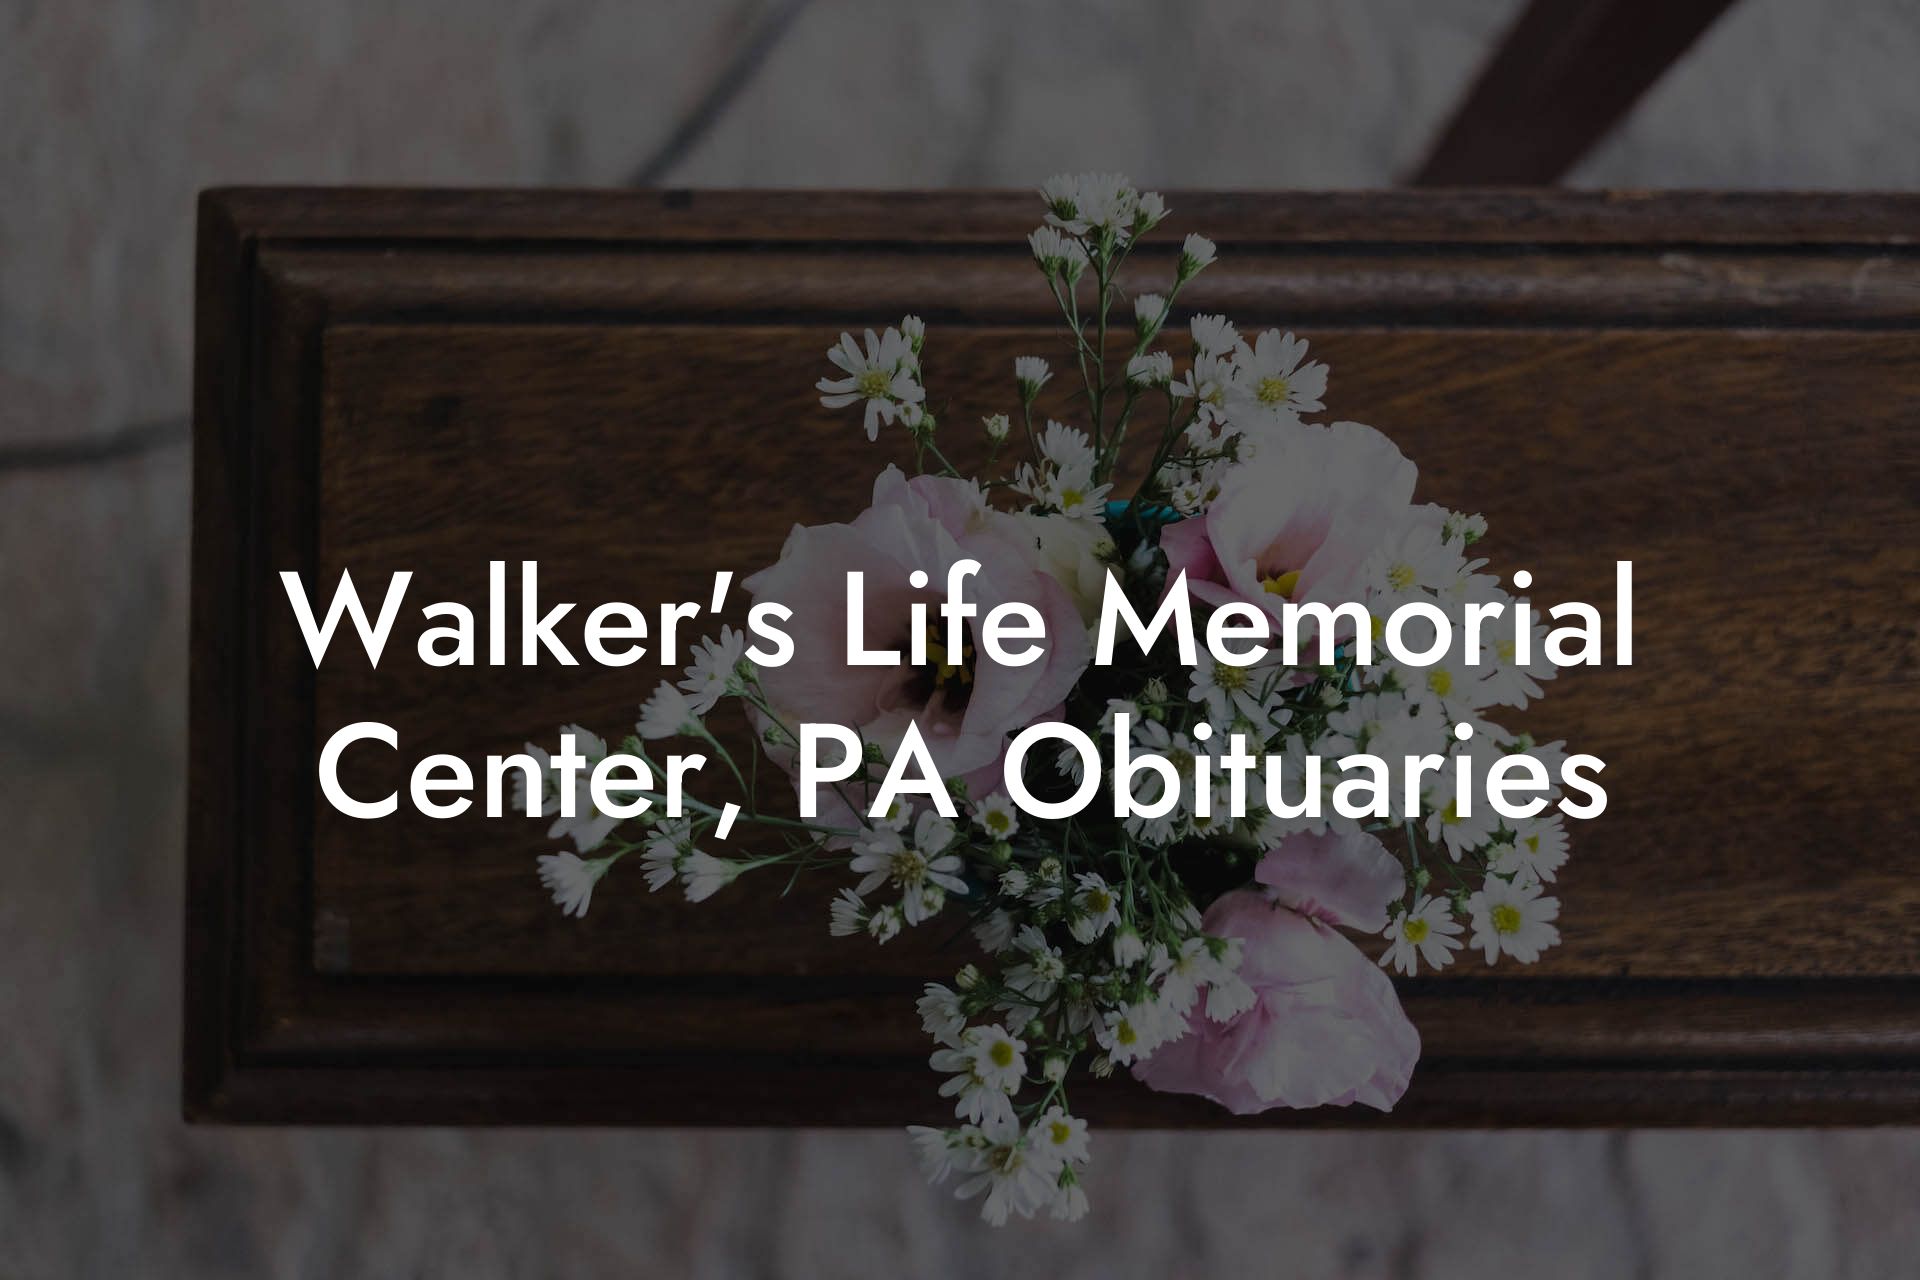 Walker's Life Memorial Center, PA Obituaries